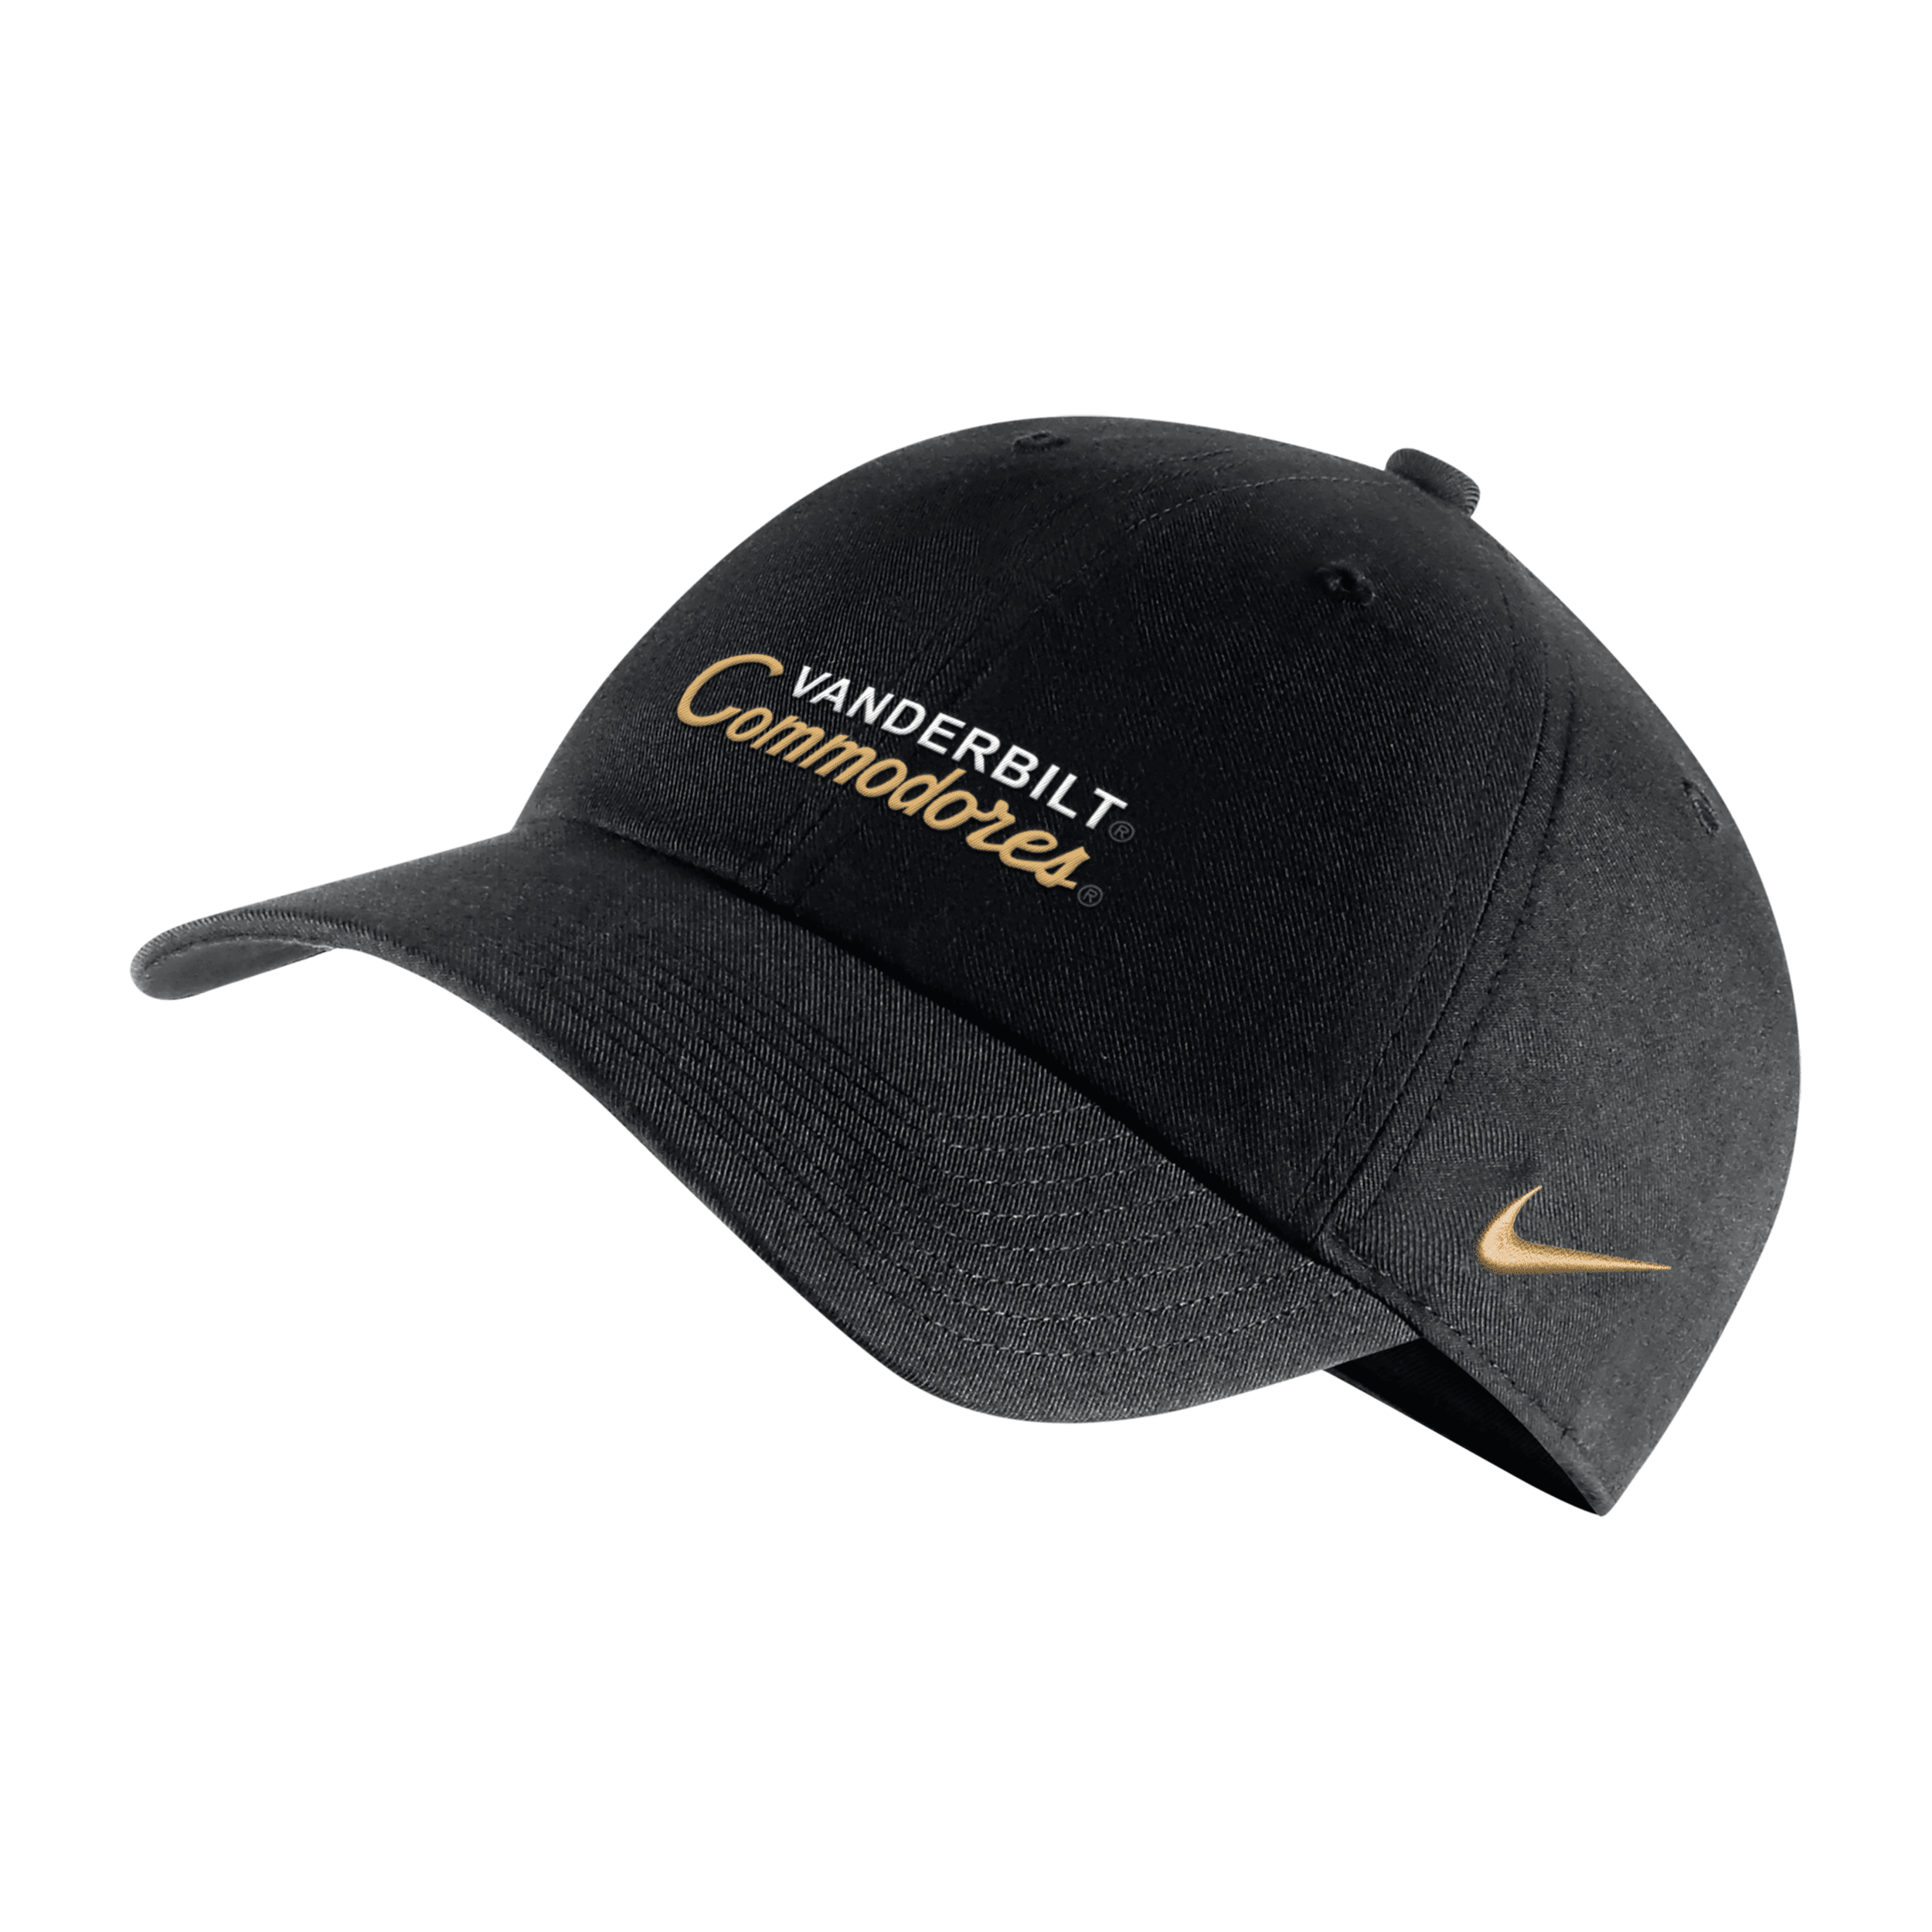 Nike Vanderbilt Campus 365  Unisex College Adjustable Hat In Black